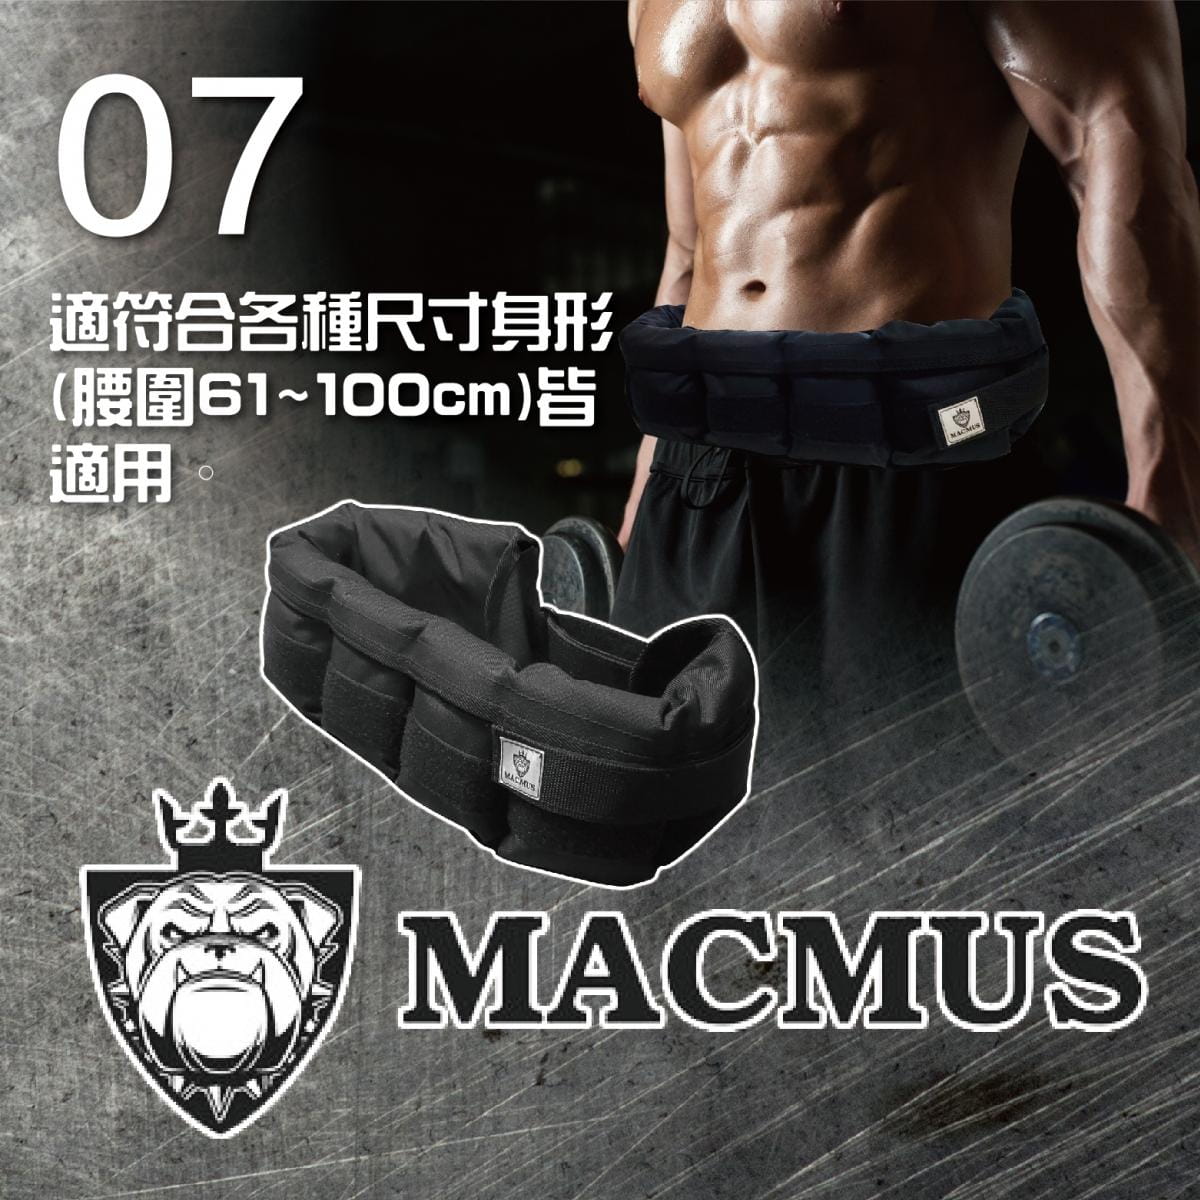 【MACMUS】2.4公斤負重腰帶｜8格式可調整重訓腰帶｜強化核心肌群鍛鍊腰部肌肉 5